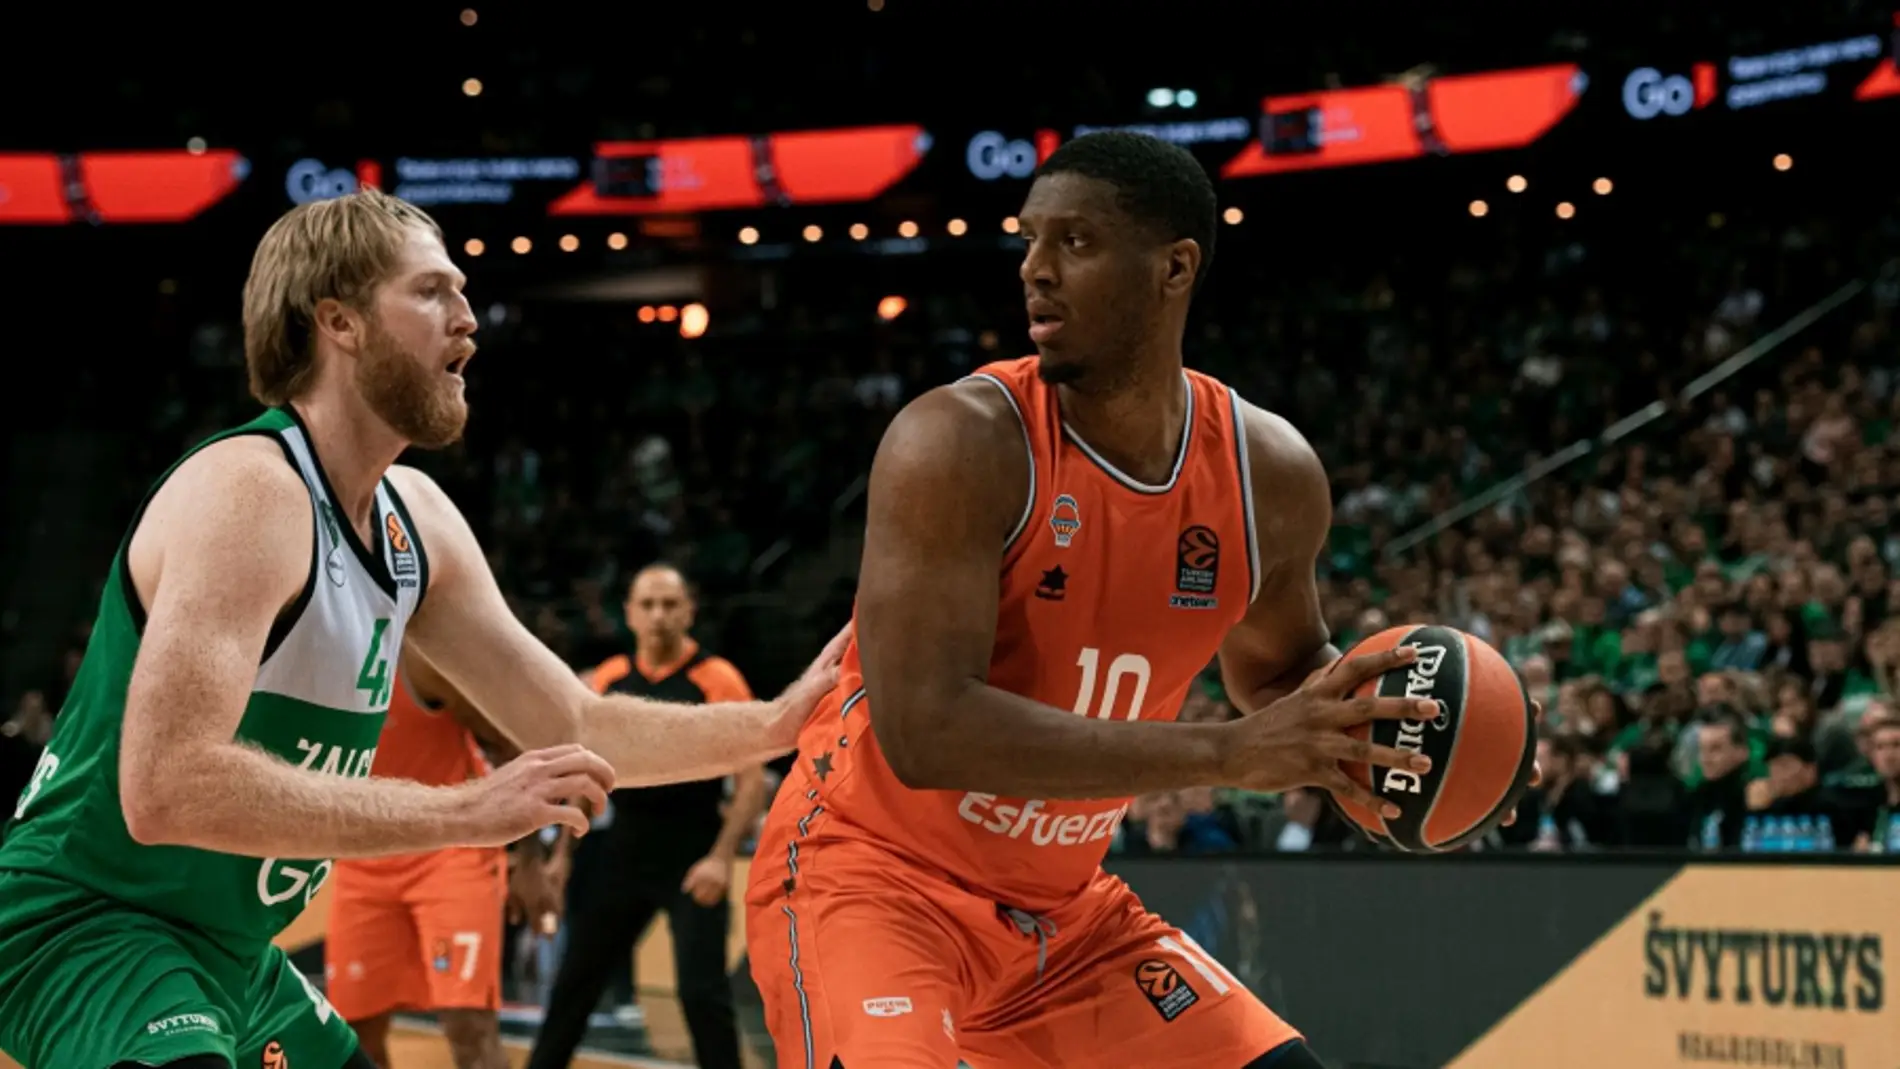 Valencia Basket recibe al Zalgiris Kaunas para cerrar un maratón de partidos en La Fonteta